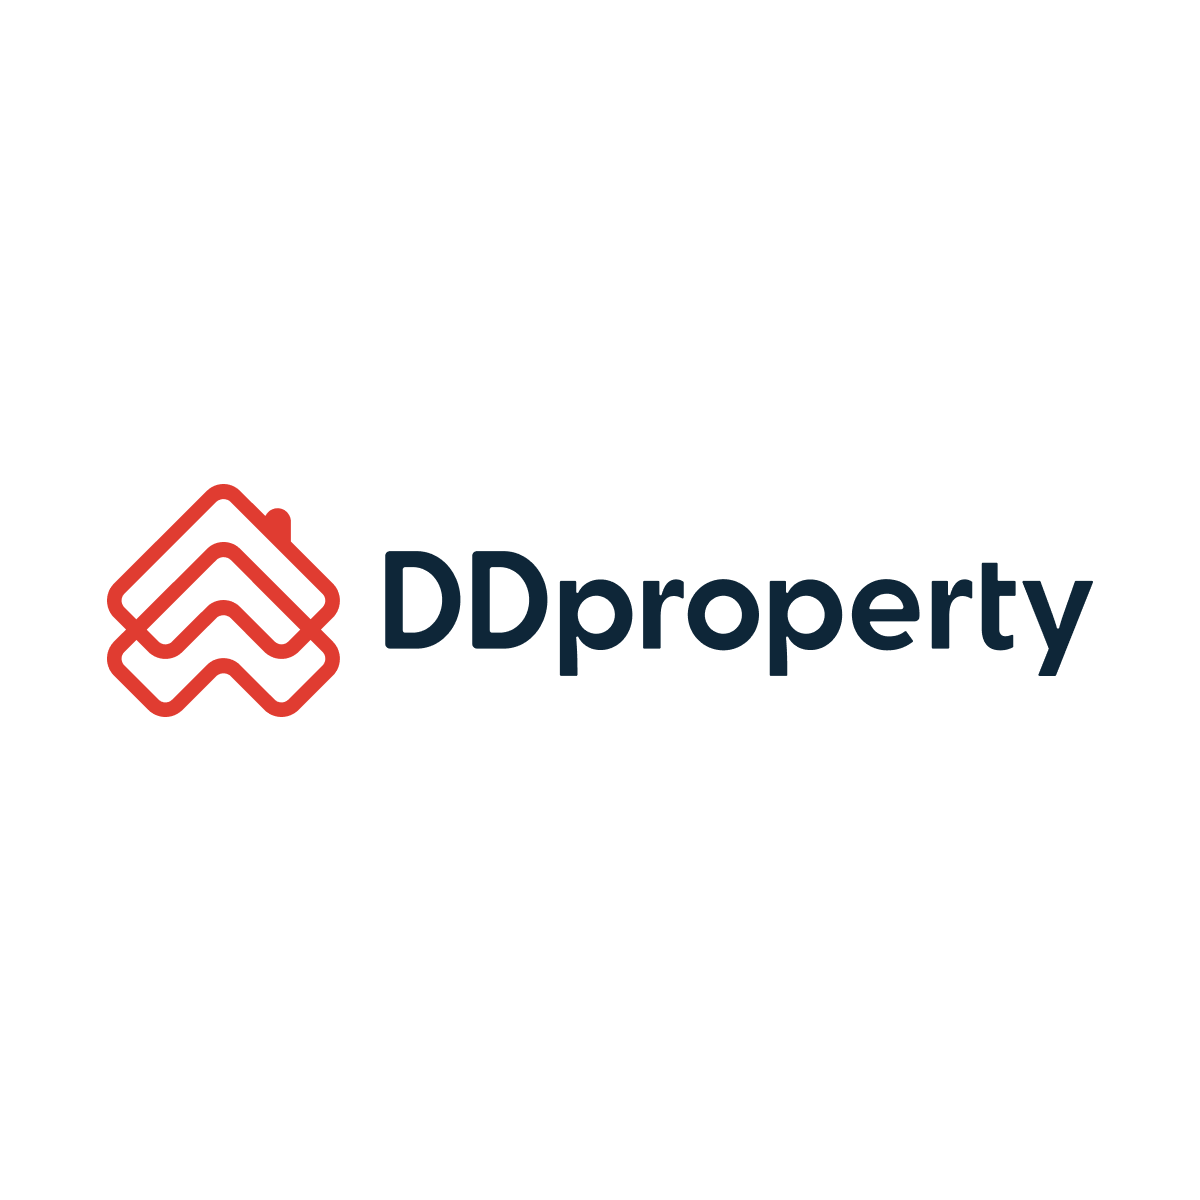 DD Property